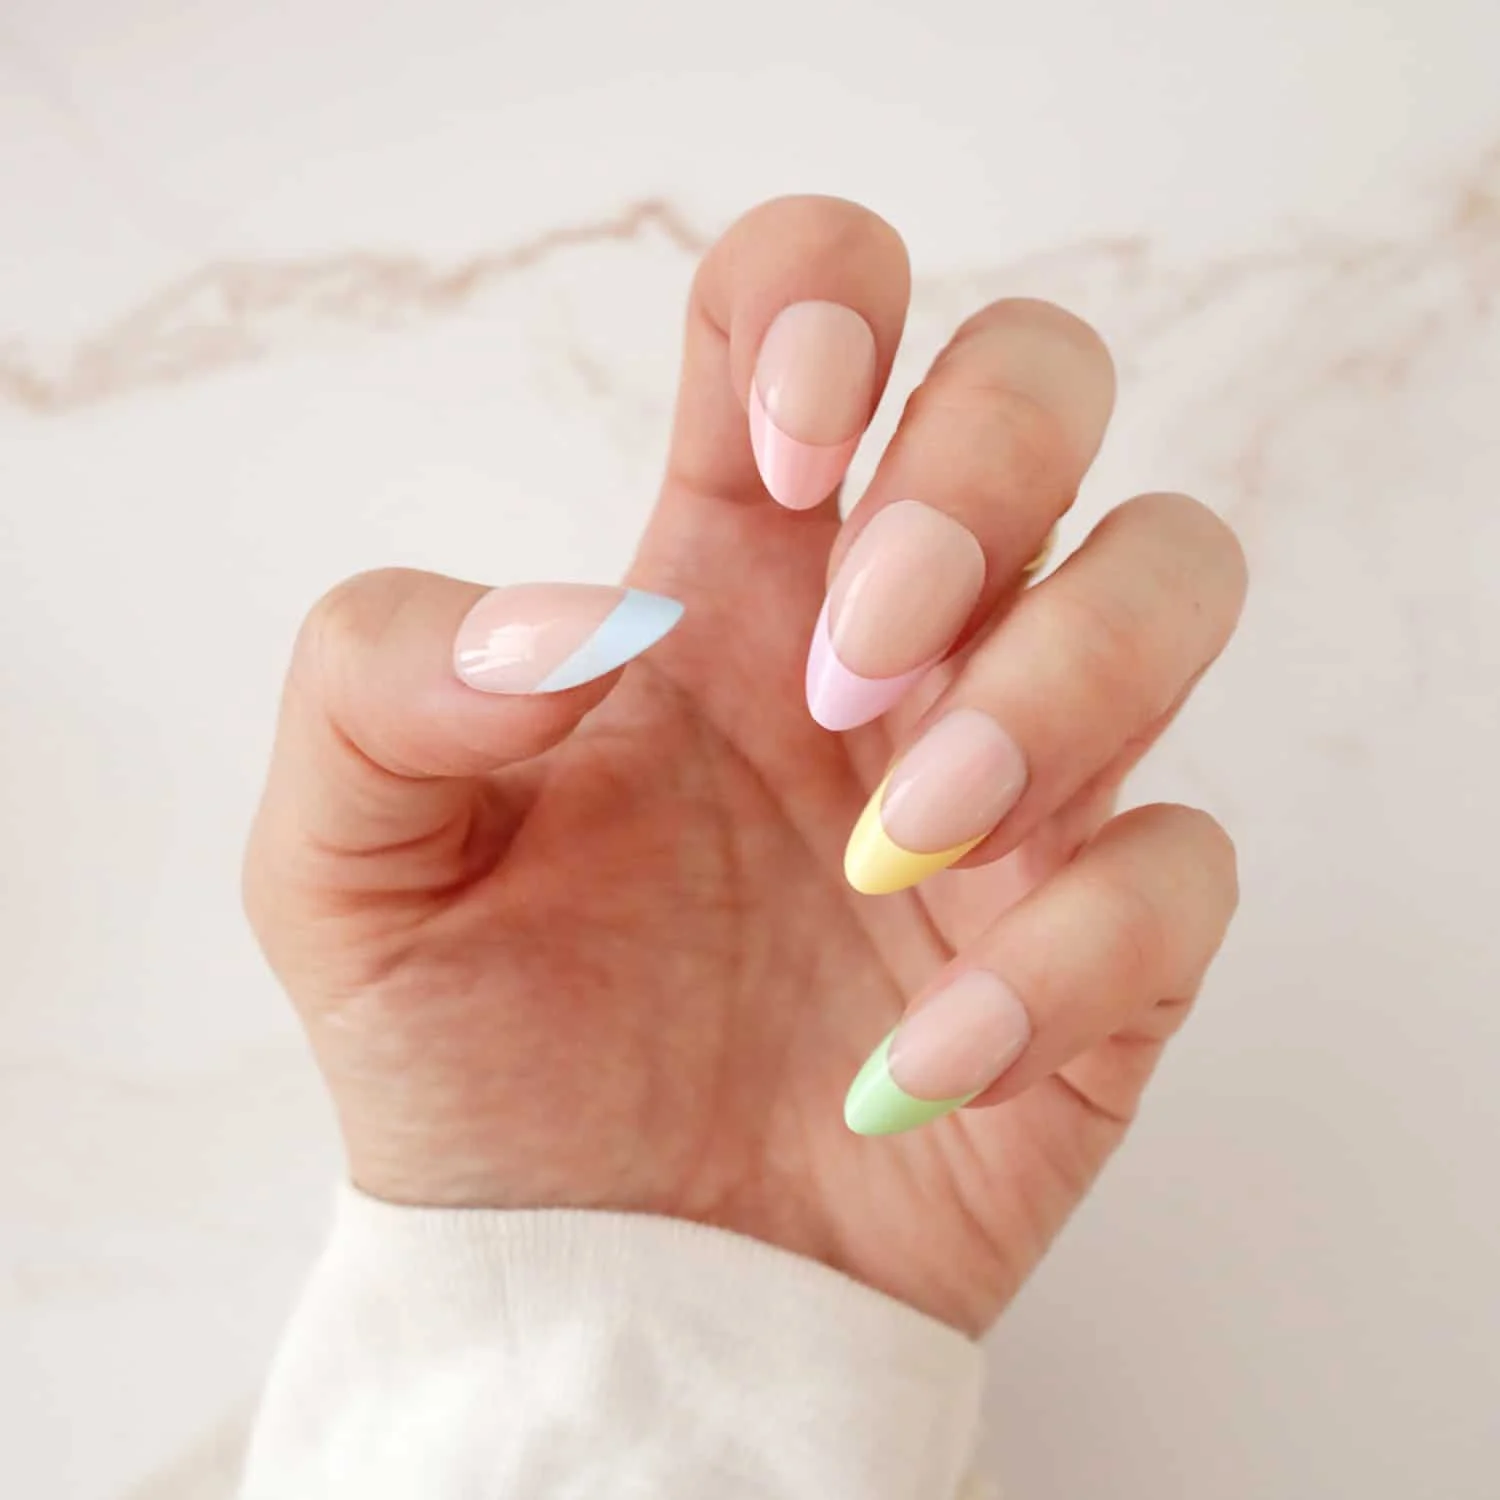 spring nails 1